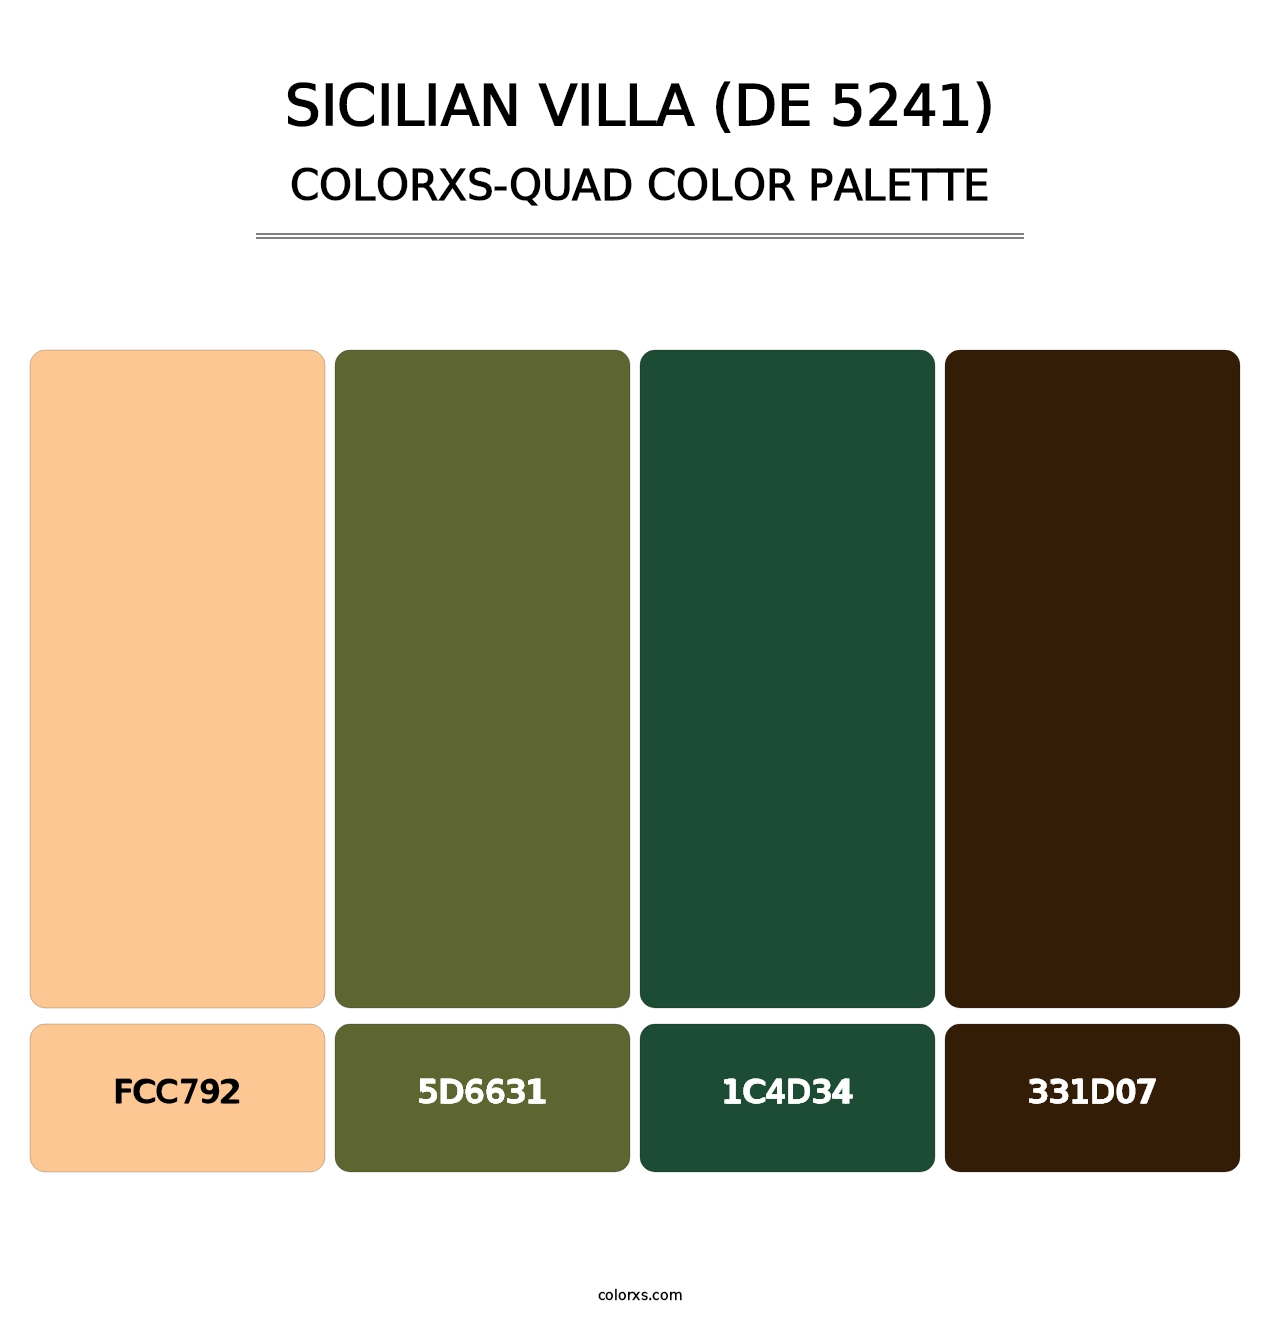 Sicilian Villa (DE 5241) - Colorxs Quad Palette